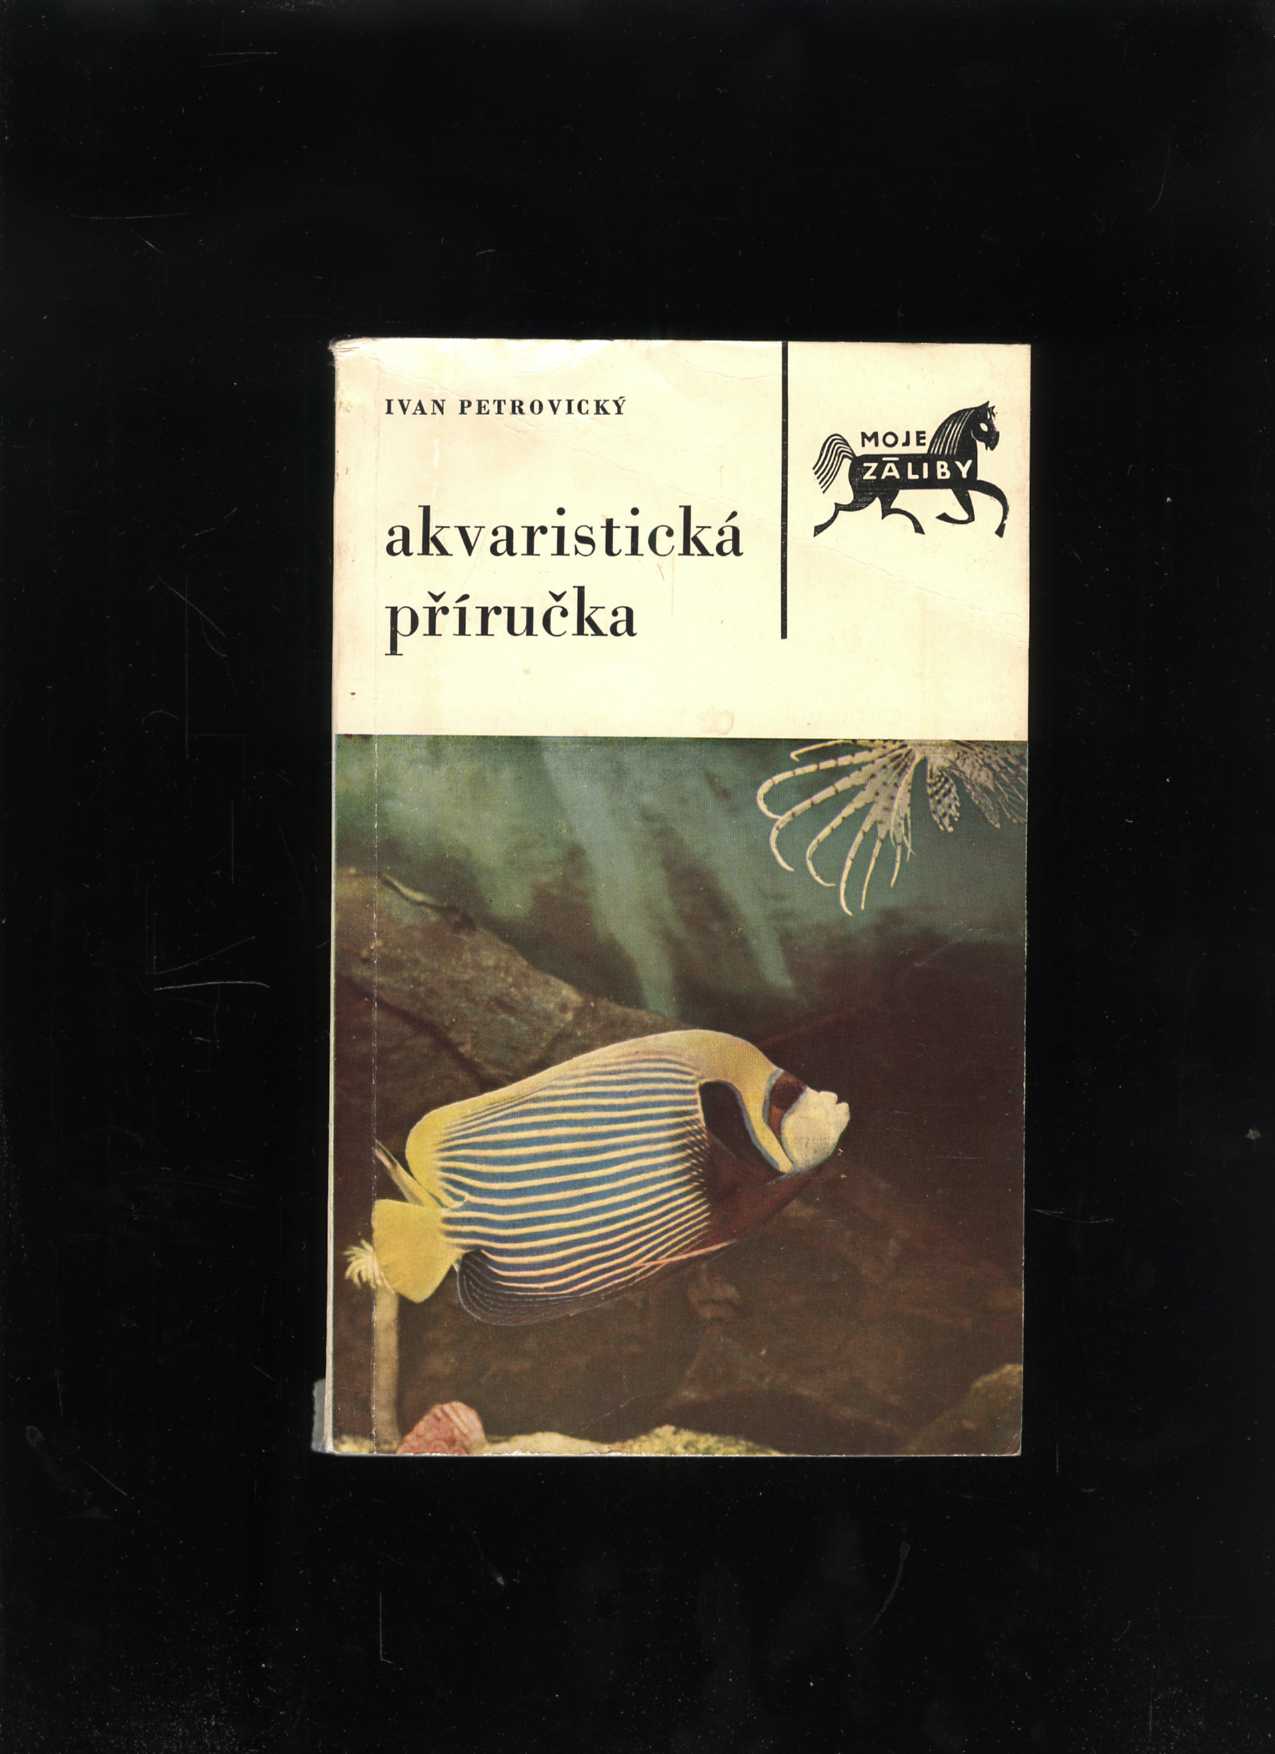 Akvaristická příručka (Ivan Petrovický)